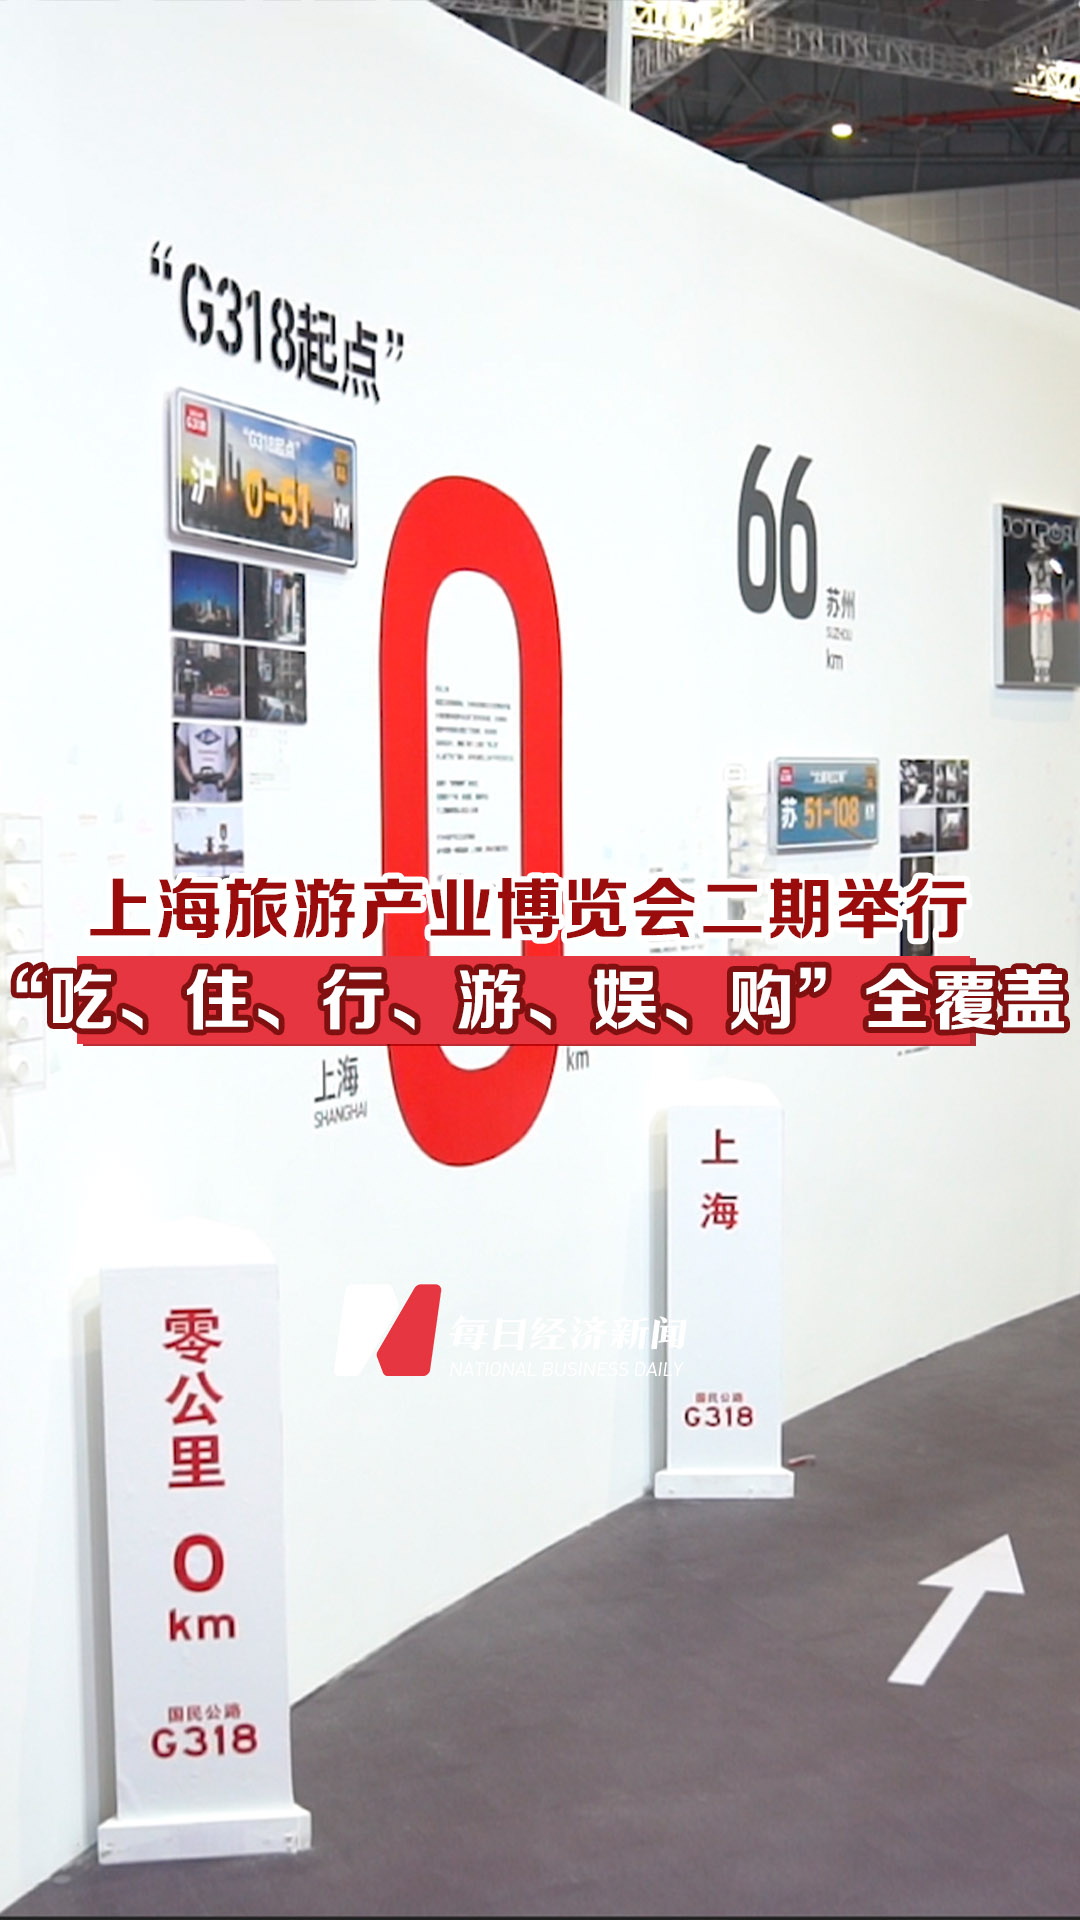 上海旅游展覽會二期舉行，“吃、住、行、游、娛、購”全覆蓋